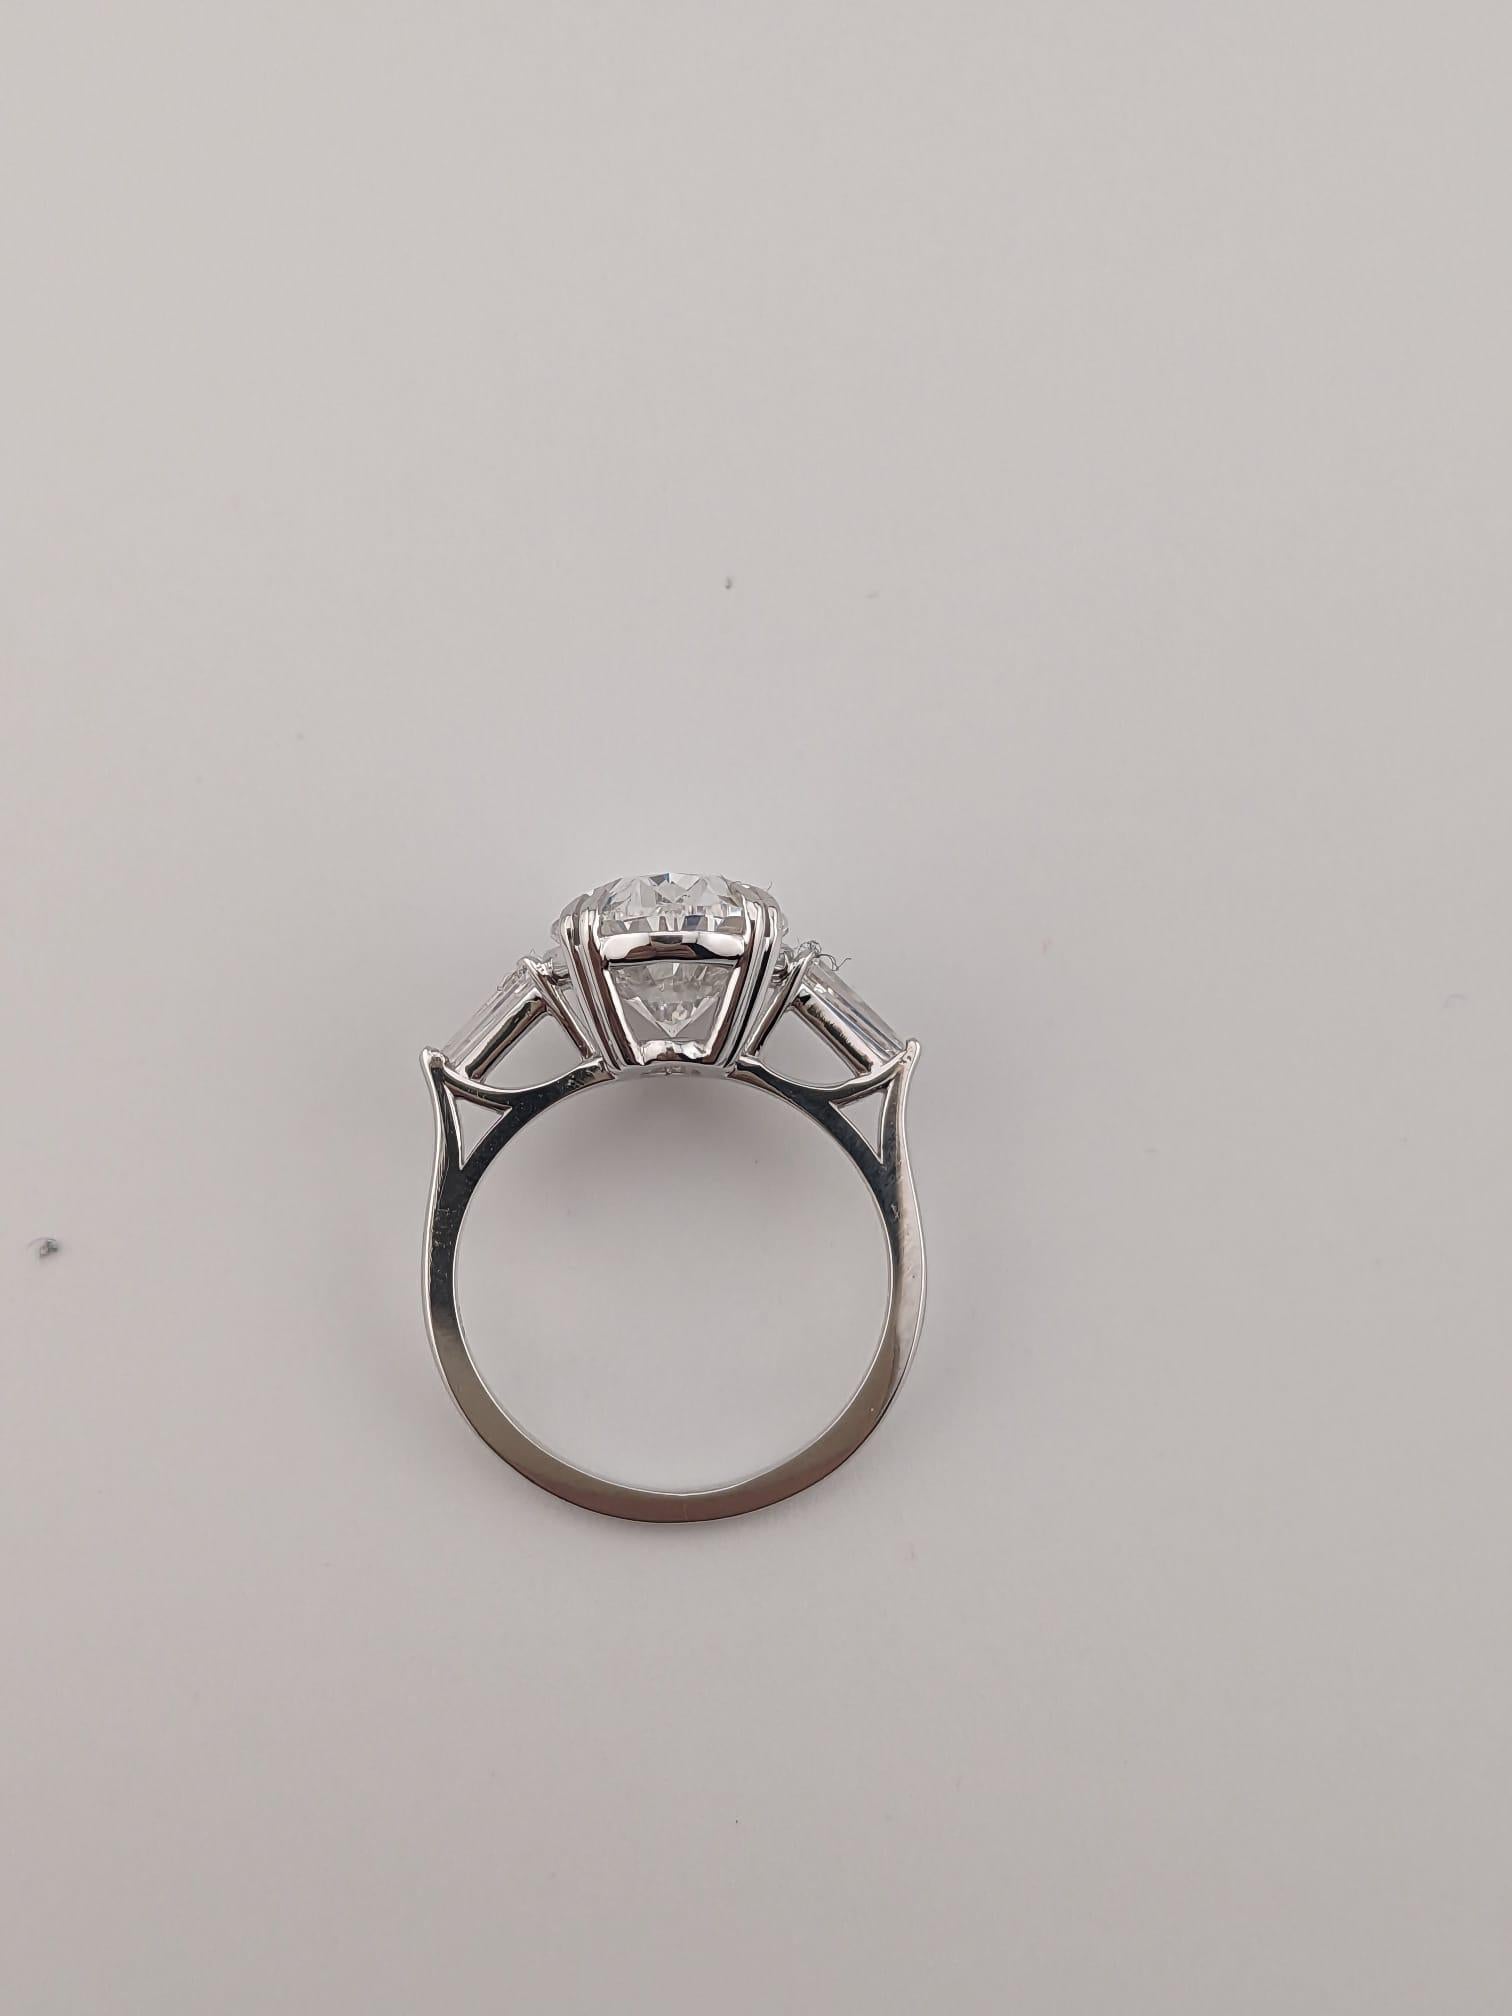 4 carat diamond ring price